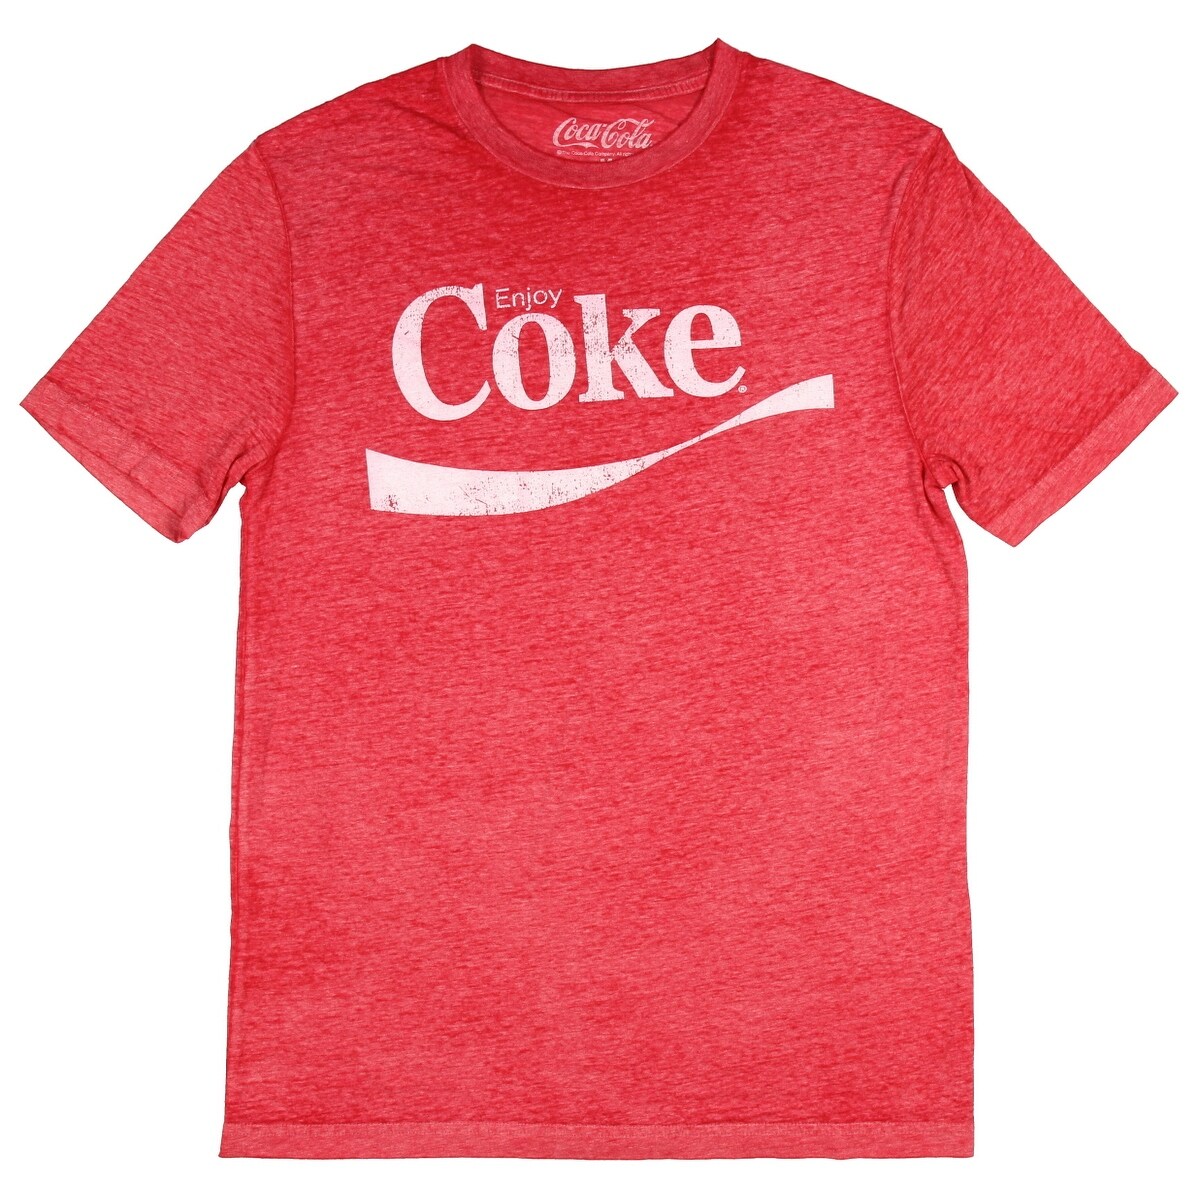 red coke shirt